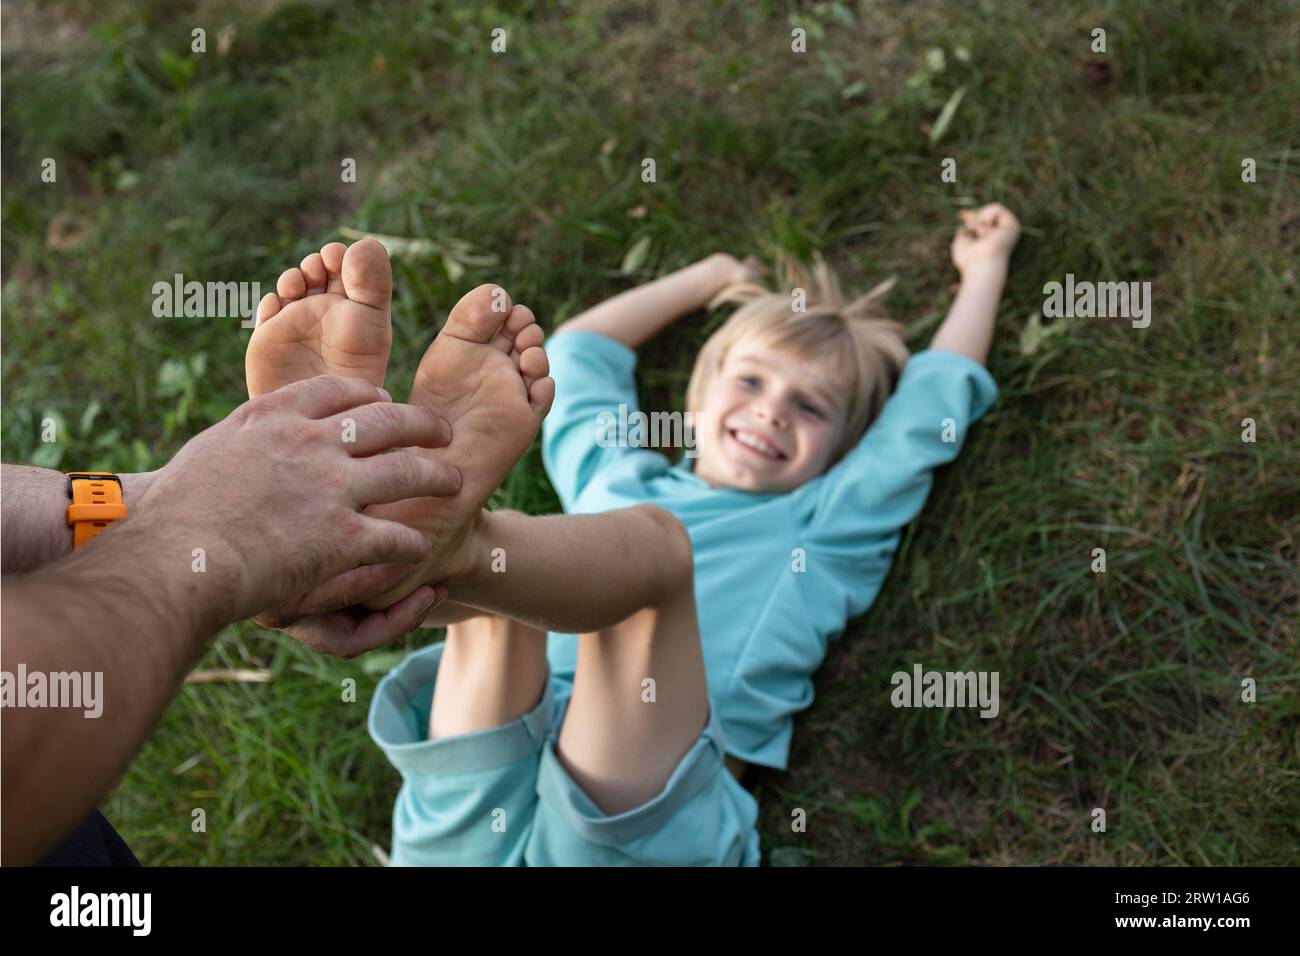 le mani dell'uomo solleticano i piedi nudi di di un bambino sdraiato sull'erba. Divertimento in famiglia, infanzia felice. giorno del figlio. La gioia della comunicazione, giocare ad aro Foto Stock